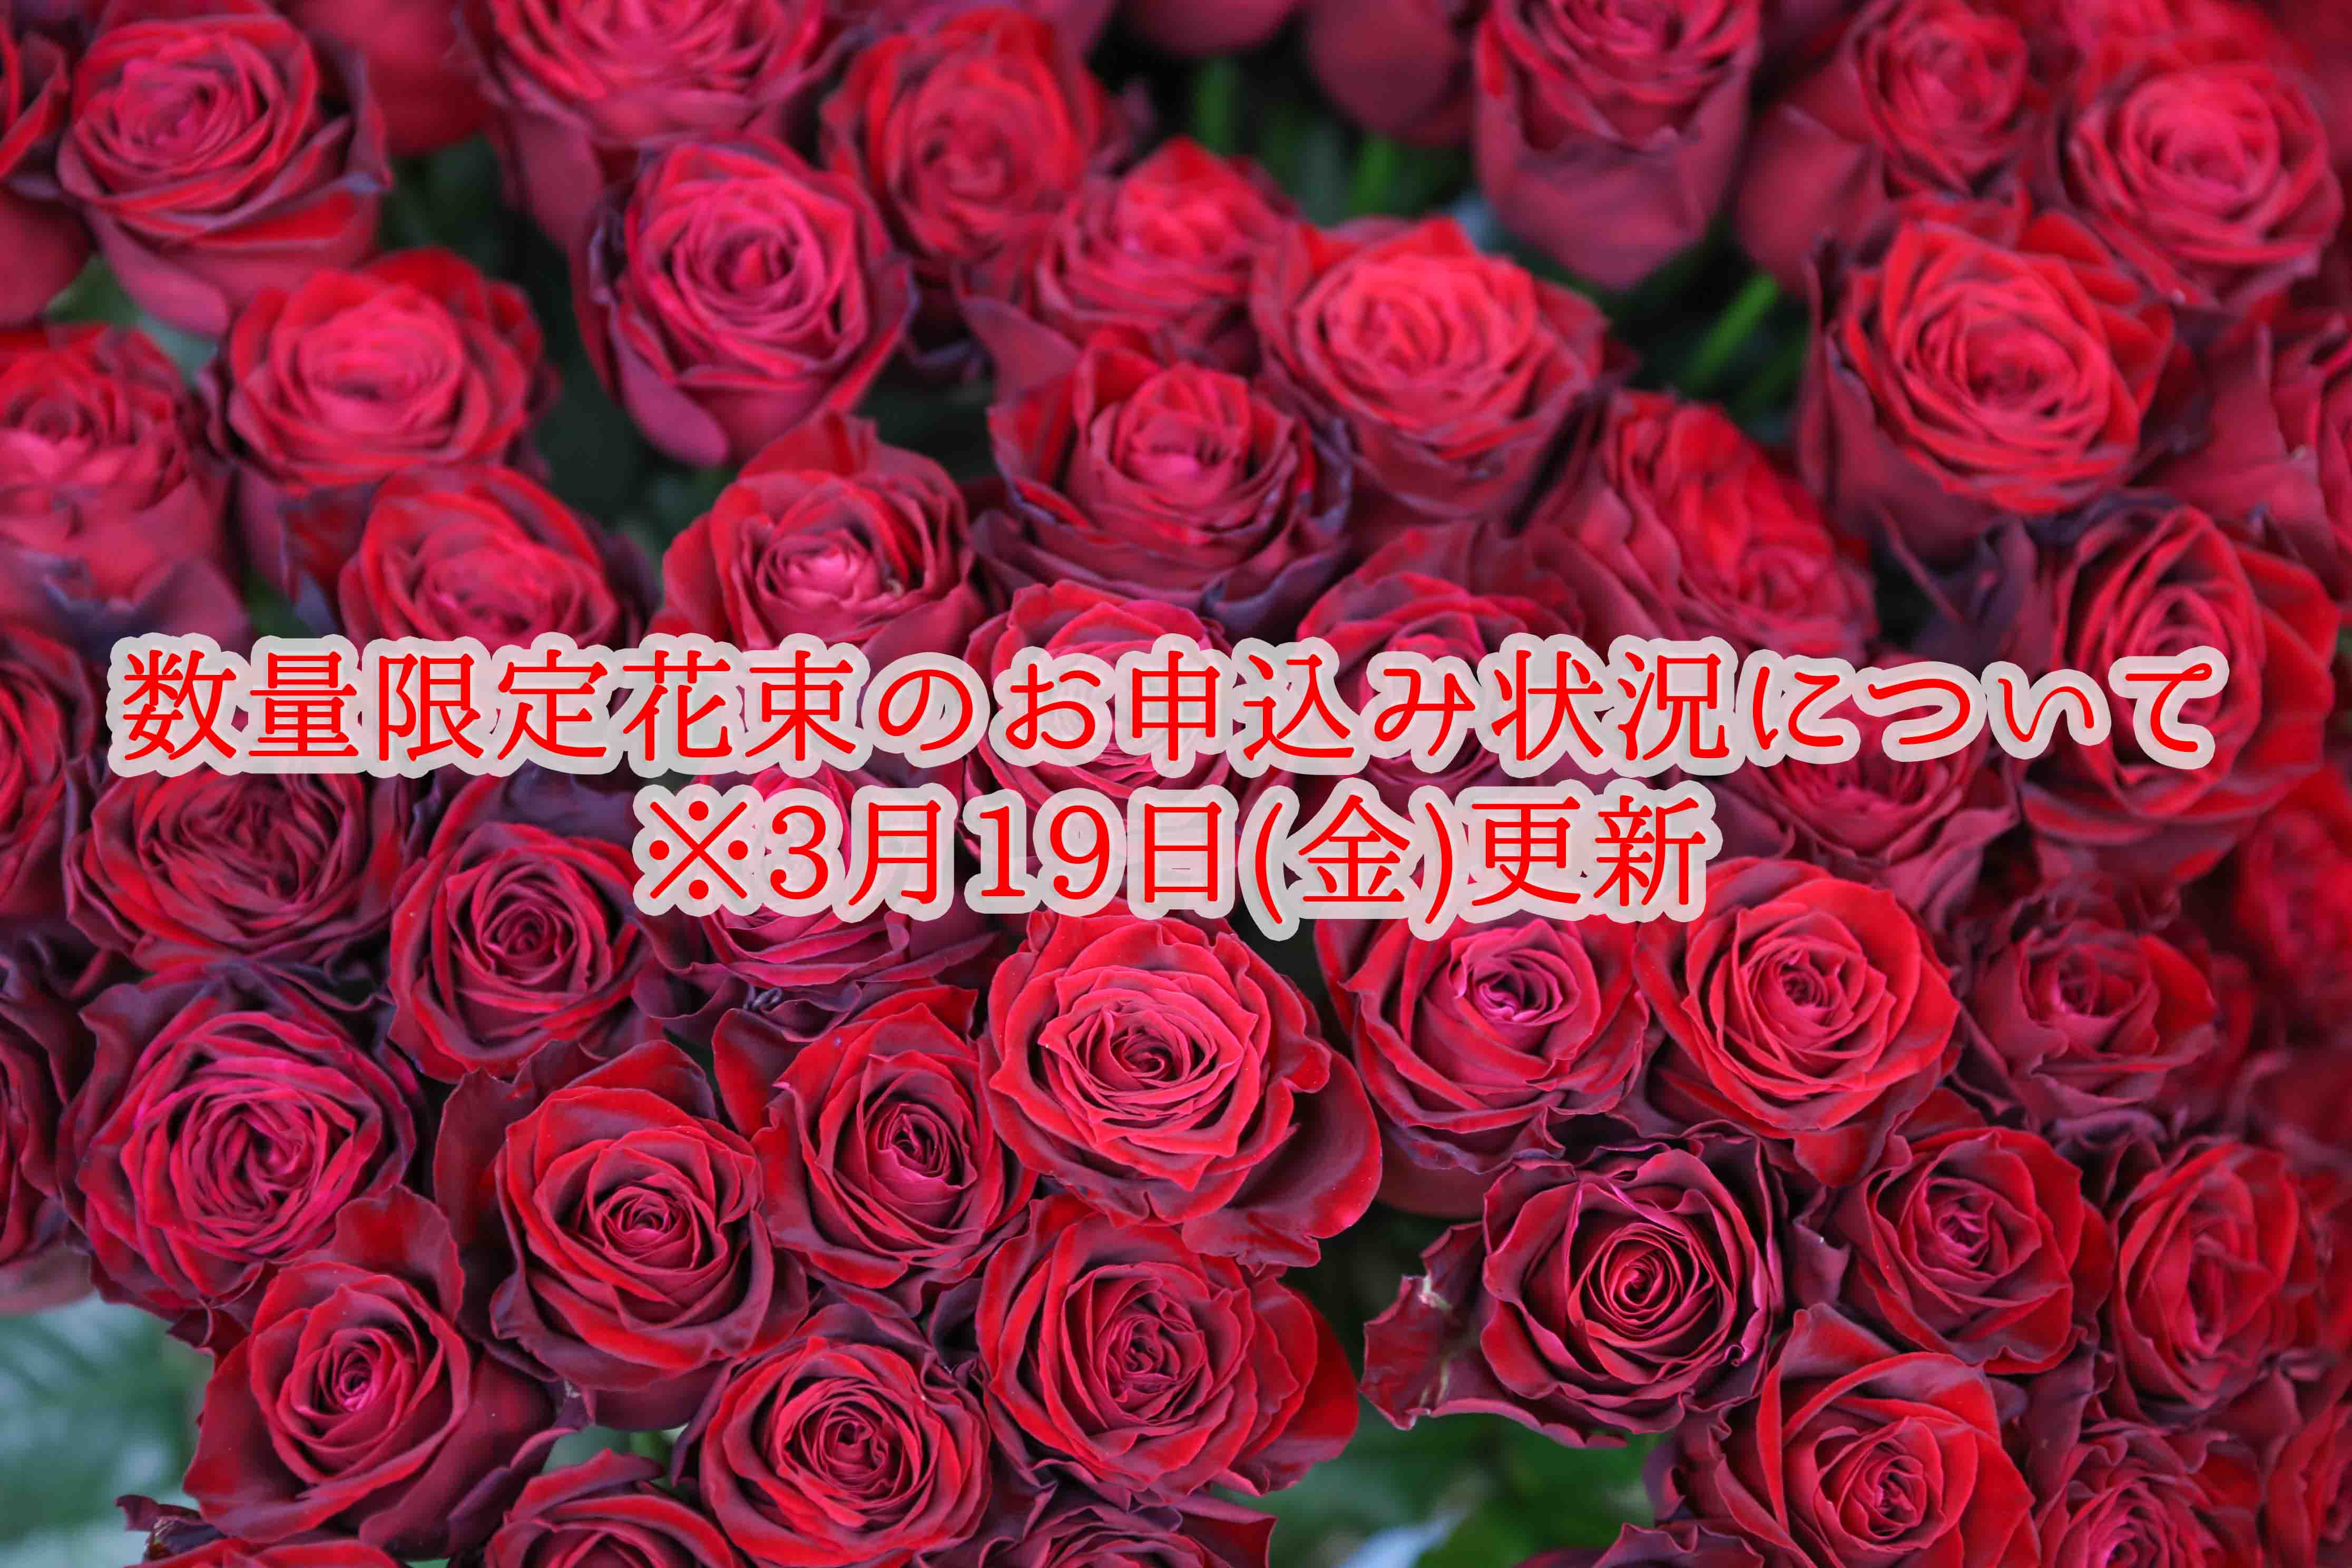 【３月１９日（金）更新】 ◆数量限定花束のお申込み状況について◆